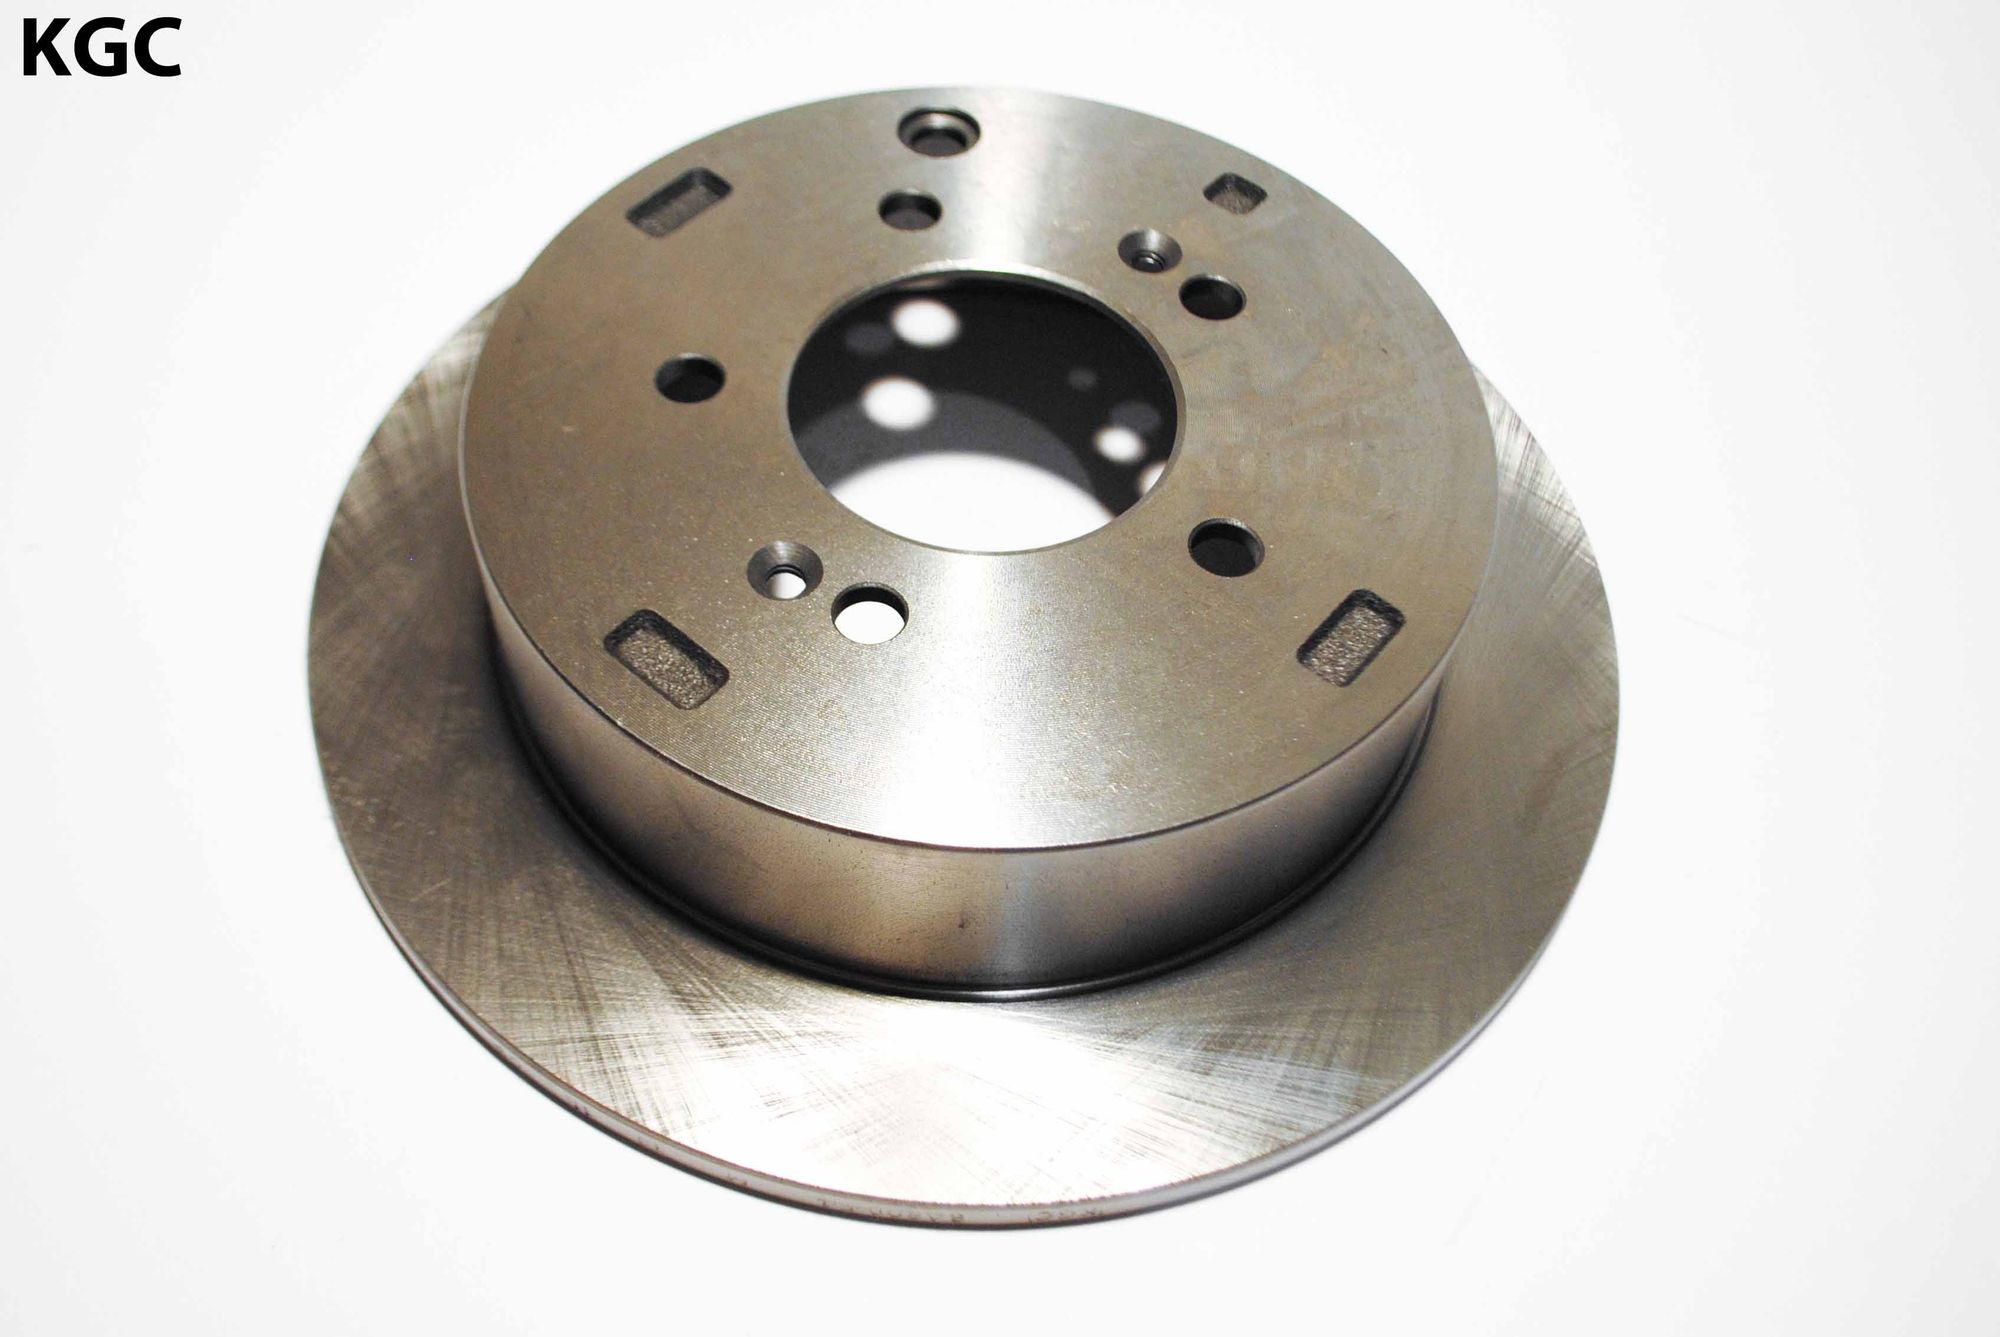 Тормозной диск, Задний (58411-3A300, 58411-2Y300) на Hyundai Tucson (04-09), (09- ), ix35 (09- ), Sa 3a30054 Kgc